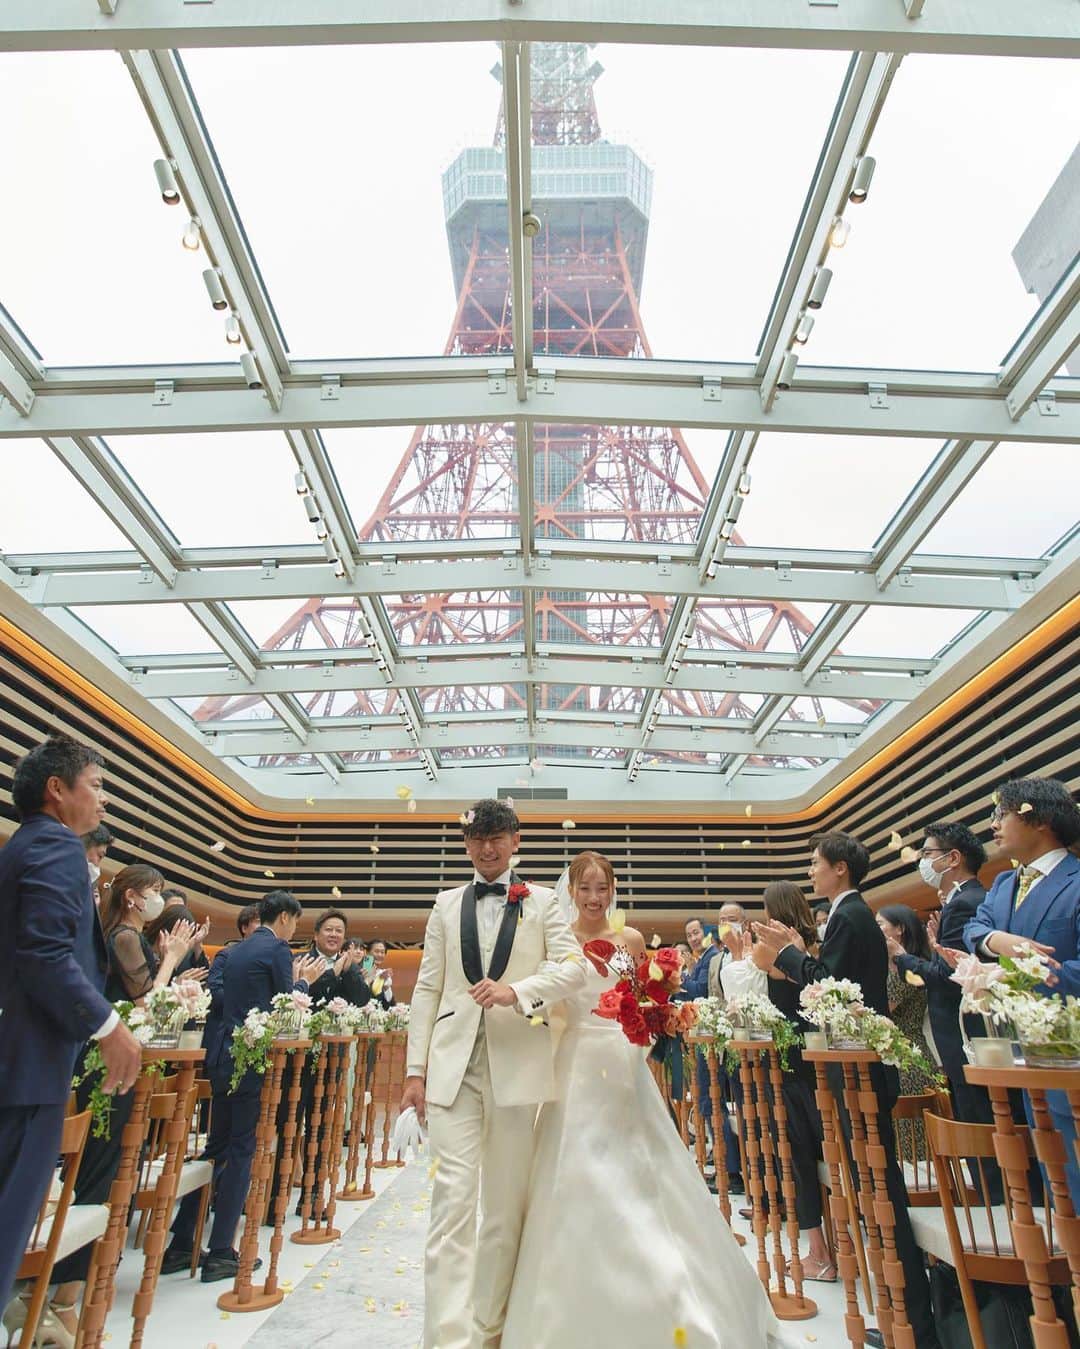 東京タワーの麓の結婚式のインスタグラム：「🗼 @theplaceoftokyo ←他の投稿はこちら  The Place of Tokyo オリジナル挙式  “The Place for Eternity”  心からの誓いを、大切な人たちと。  世界情勢が変化し、 今まで通りの生活が送れなくなった私たち。 大切な人に会えず、 結婚式も思うようにできなくなりました。  そのような状況下で、 The Place of Tokyoでは 結婚式の大切さを再確認し、 「価値ある結婚式」を作りたいと オリジナル挙式を提案しています。  結婚式をするという選択をしたふたりに、最高の祝福を。  ｰｰｰｰｰｰｰｰｰｰｰｰｰｰｰｰｰｰｰｰｰｰｰｰｰｰｰｰ  東京タワーの麓の結婚式場 The Place of Tokyo @theplaceoftokyo  思い出の場所は はじまりの場所となり 永遠の場所に変わる  2023.9 リニューアルオープン  ｰｰｰｰｰｰｰｰｰｰｰｰｰｰｰｰｰｰｰｰｰｰｰｰｰｰｰｰ  #プレオブ花嫁  #theplaceoftokyo #プレイスオブトウキョウ  #プレイスオブトーキョー  #プレイスオブ東京  #ザプレイスオブトーキョー  #ザプレイスオブ東京  #ザプレイスオブトーキョー  #東京結婚式場 #結婚式 #結婚式場 #ブライダルフェア #ウェディングフェア #プロポーズ #東京タワー #東京タワーが好き #tokyotower  #パーティーレポート #結婚式レポート #式場探し #式場見学 #プレ花嫁 #プレ花嫁準備 #2023花嫁 #プレ花嫁2023 #2024花嫁 #プレ花嫁2024」